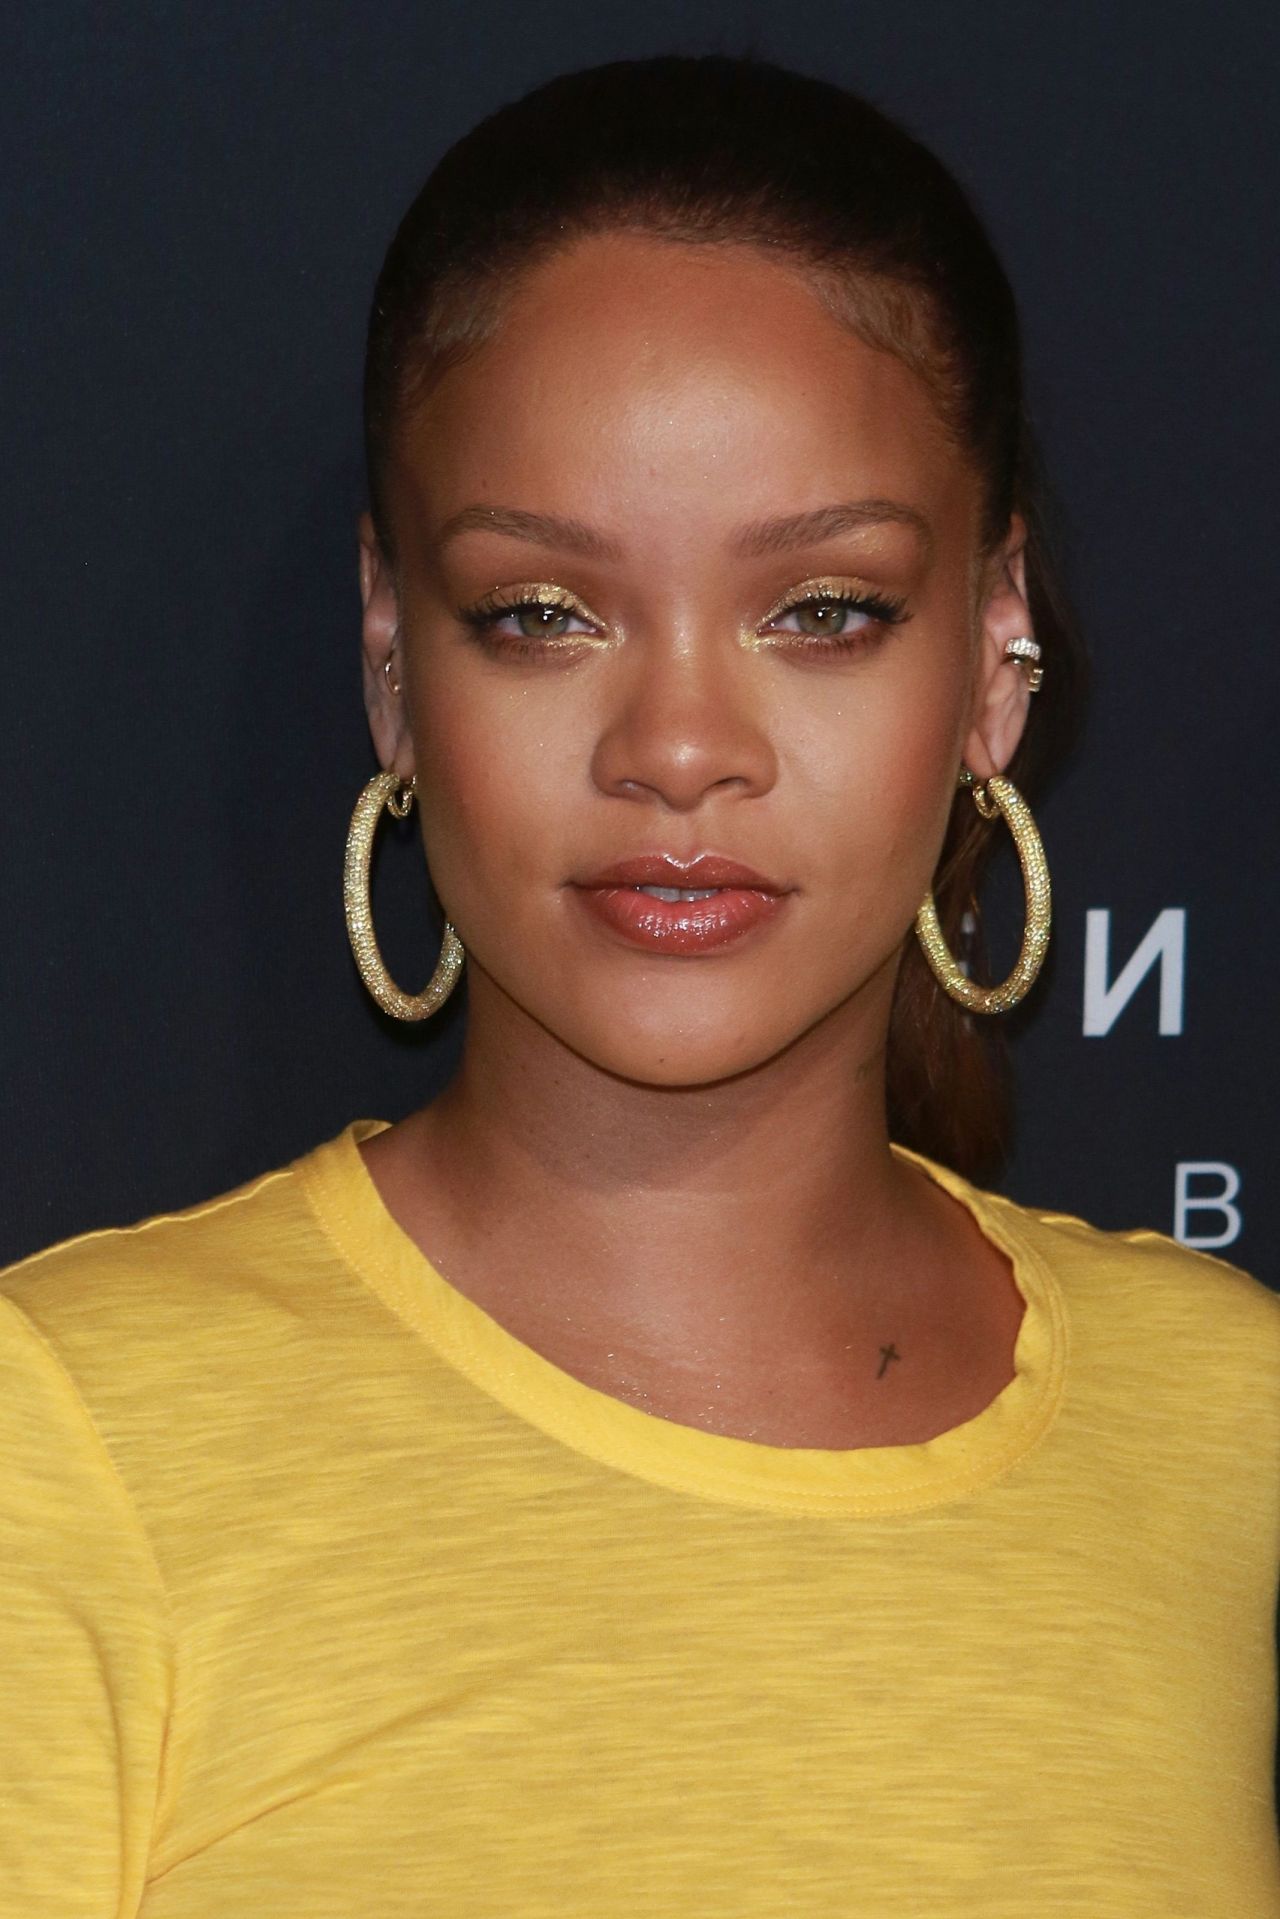 Rihanna - Fenty Beauty By Rihanna Launch in NYC 09/07/2017 • CelebMafia